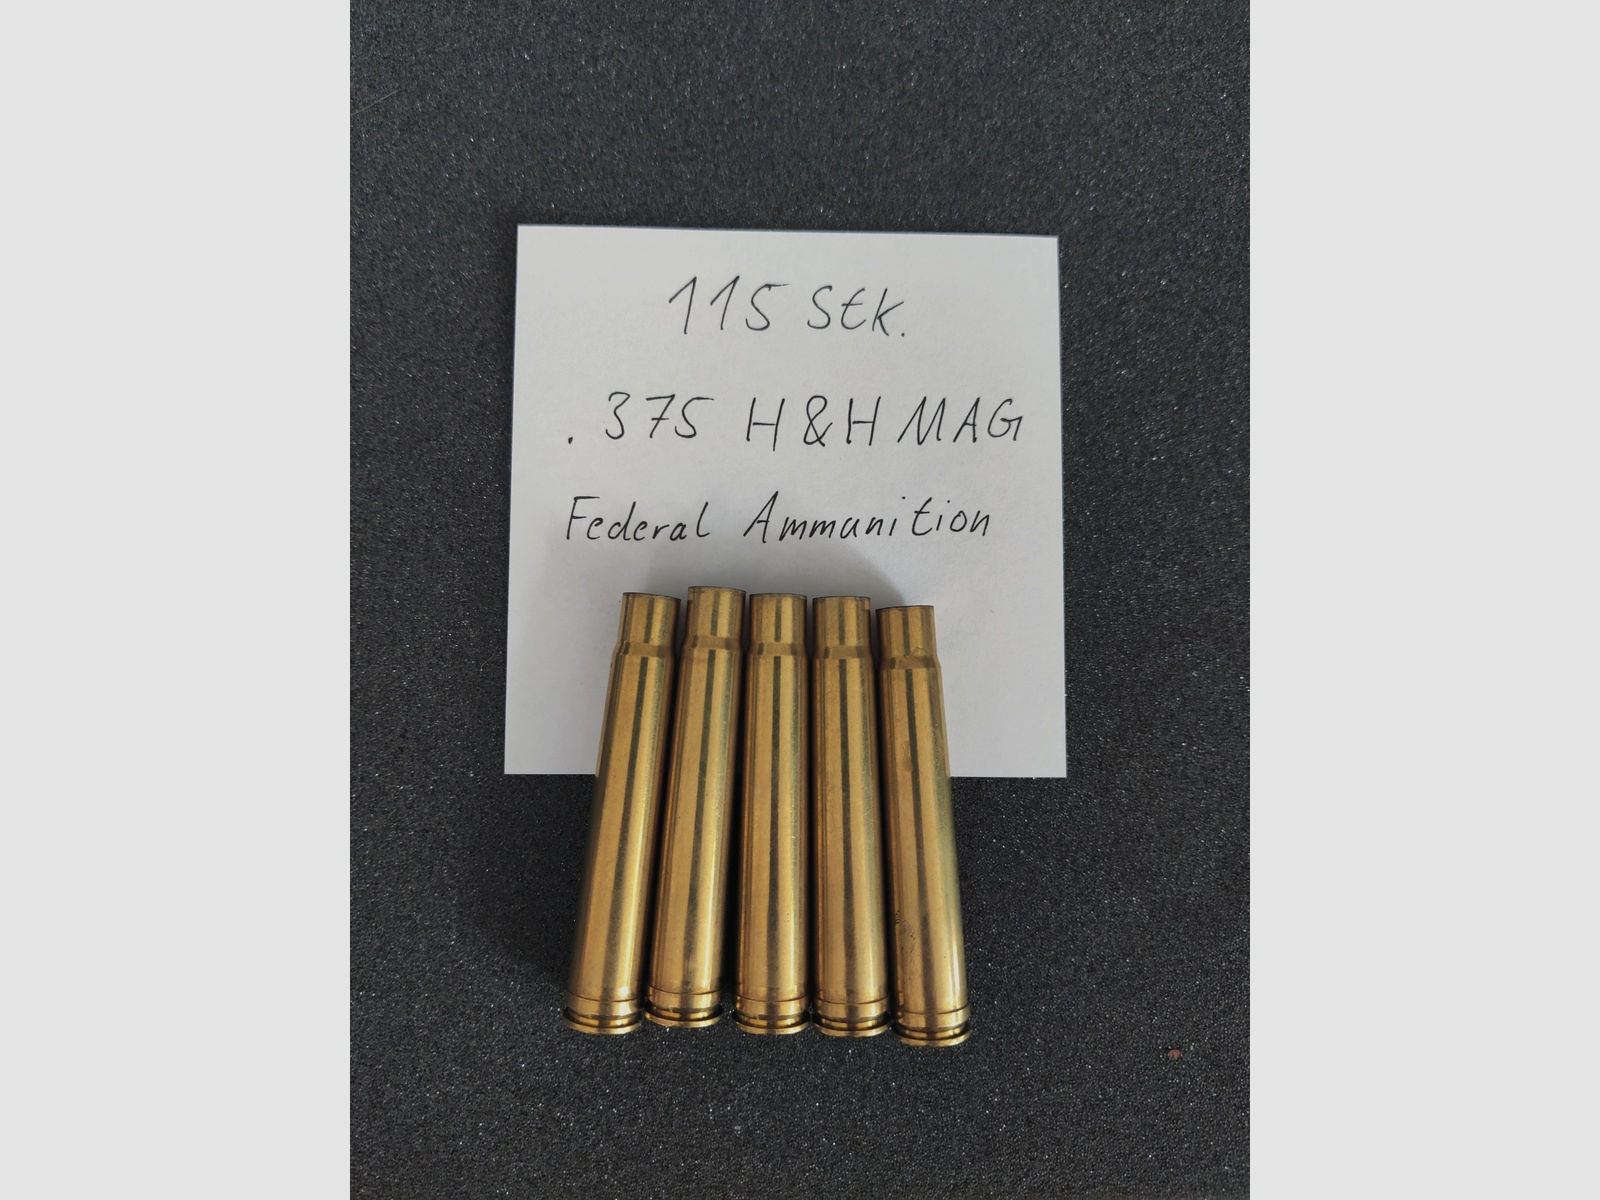 .375 H&H MAG Federal Ammunition 115 Stk.